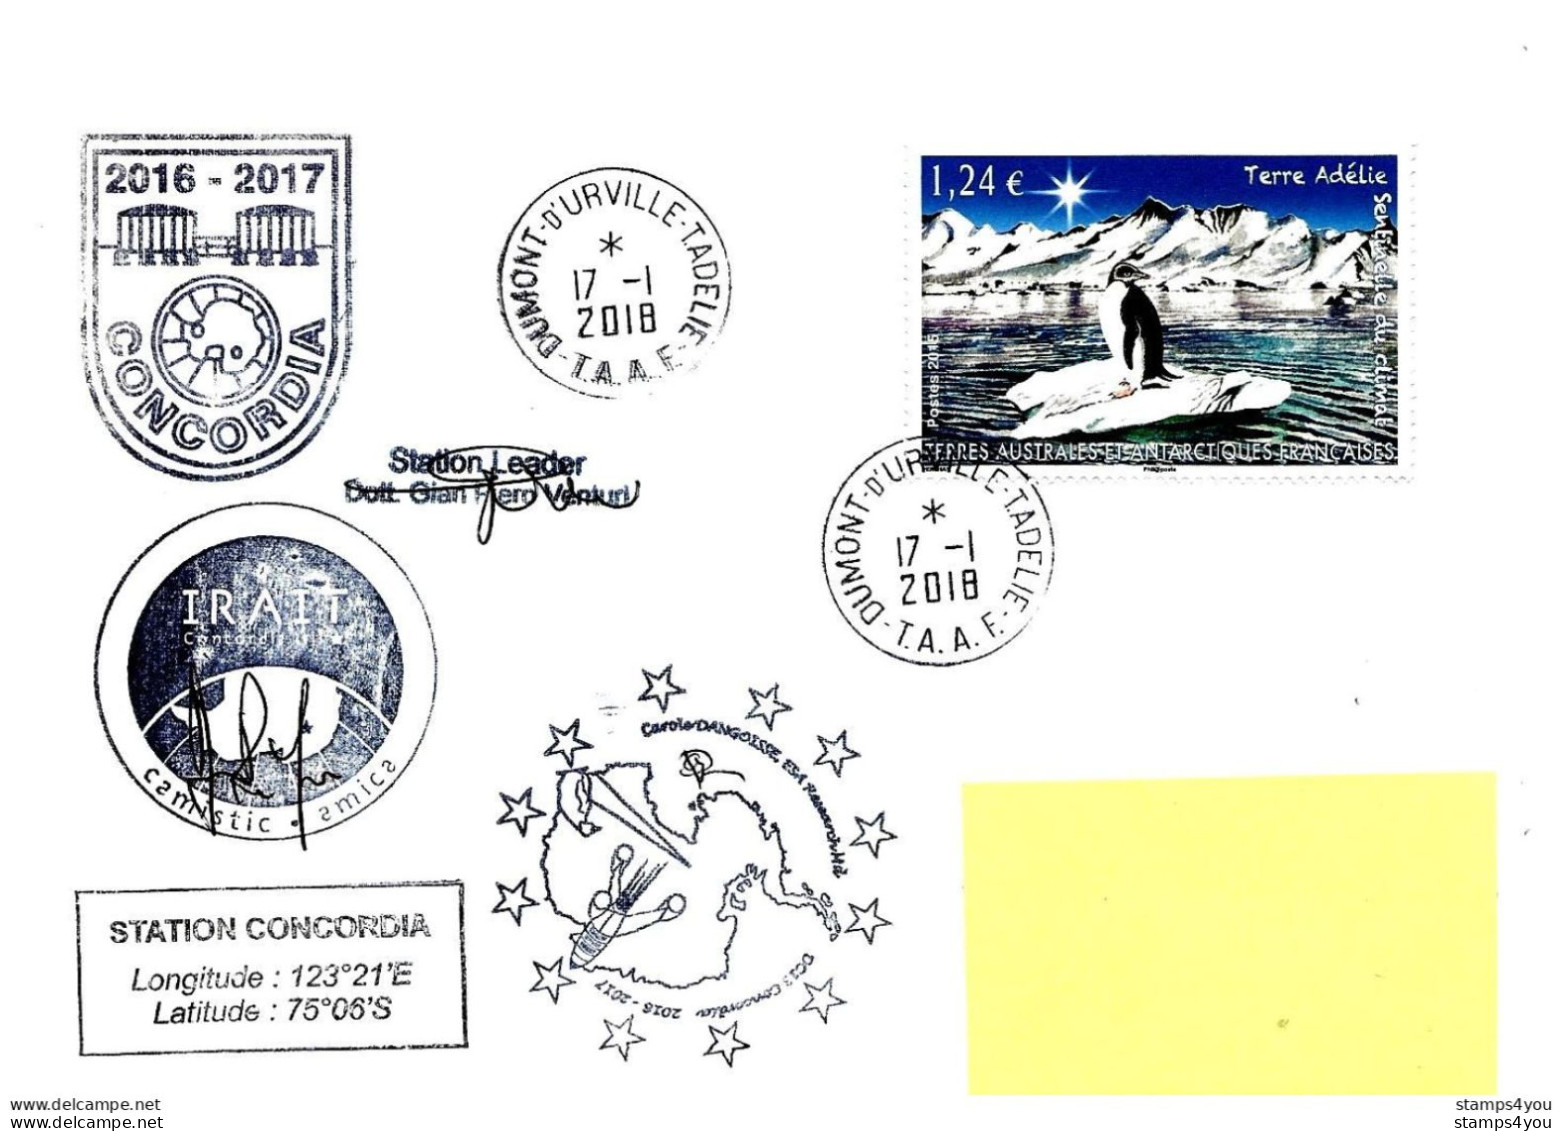 480 - 48 - Enveloppe TAAF Terre Adélie Base Franco-italienne Concordia - Cachets Illustrés  2018 - Research Stations